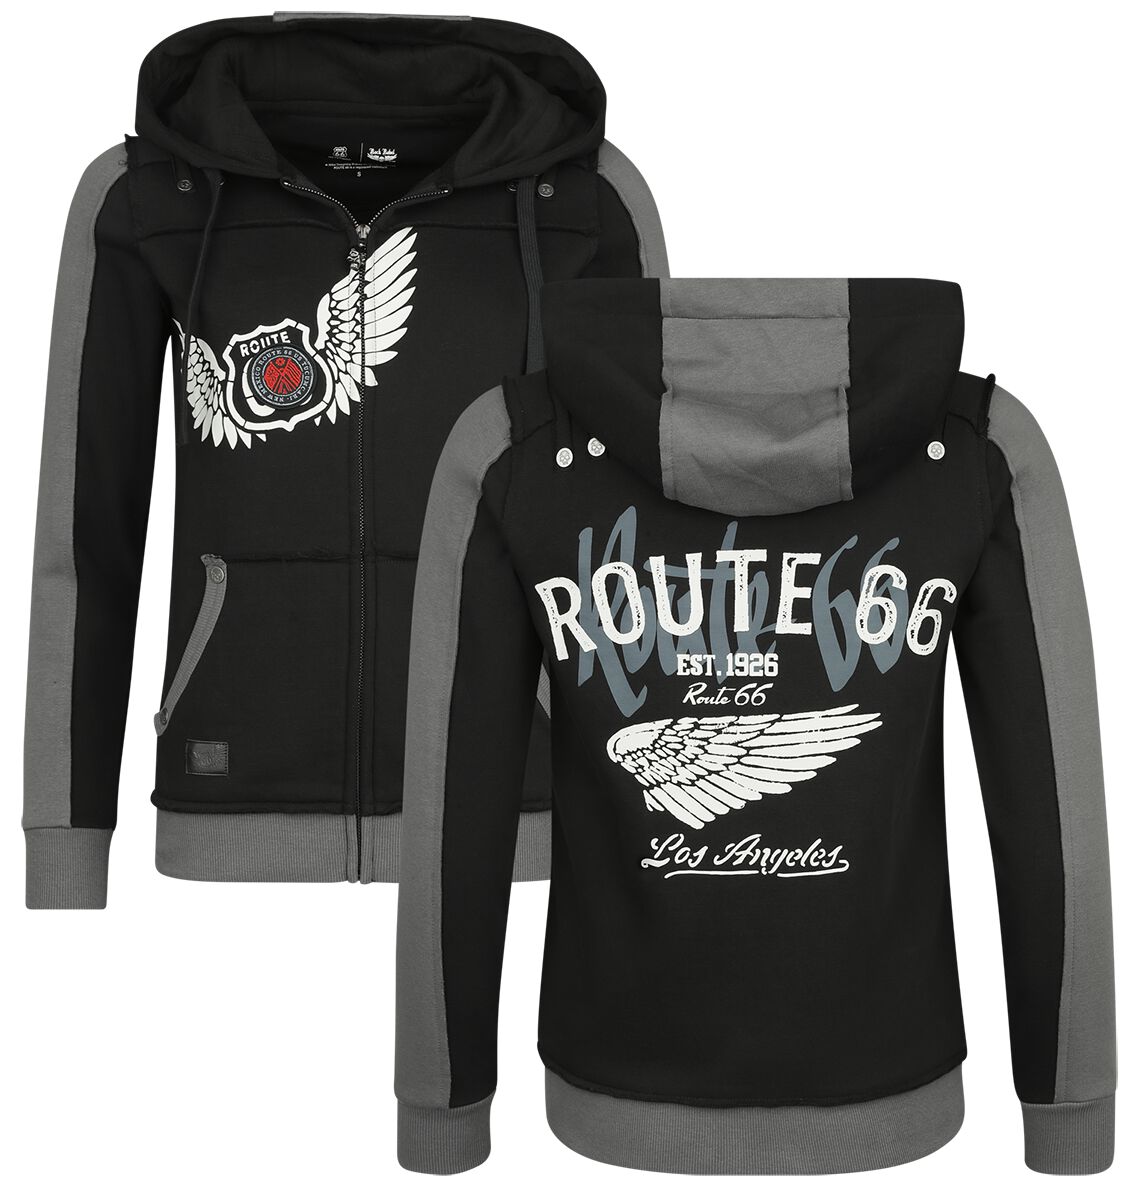 Rock Rebel by EMP Rock Rebel X Route 66 - Hoody Jacket Kapuzenjacke schwarz in XL